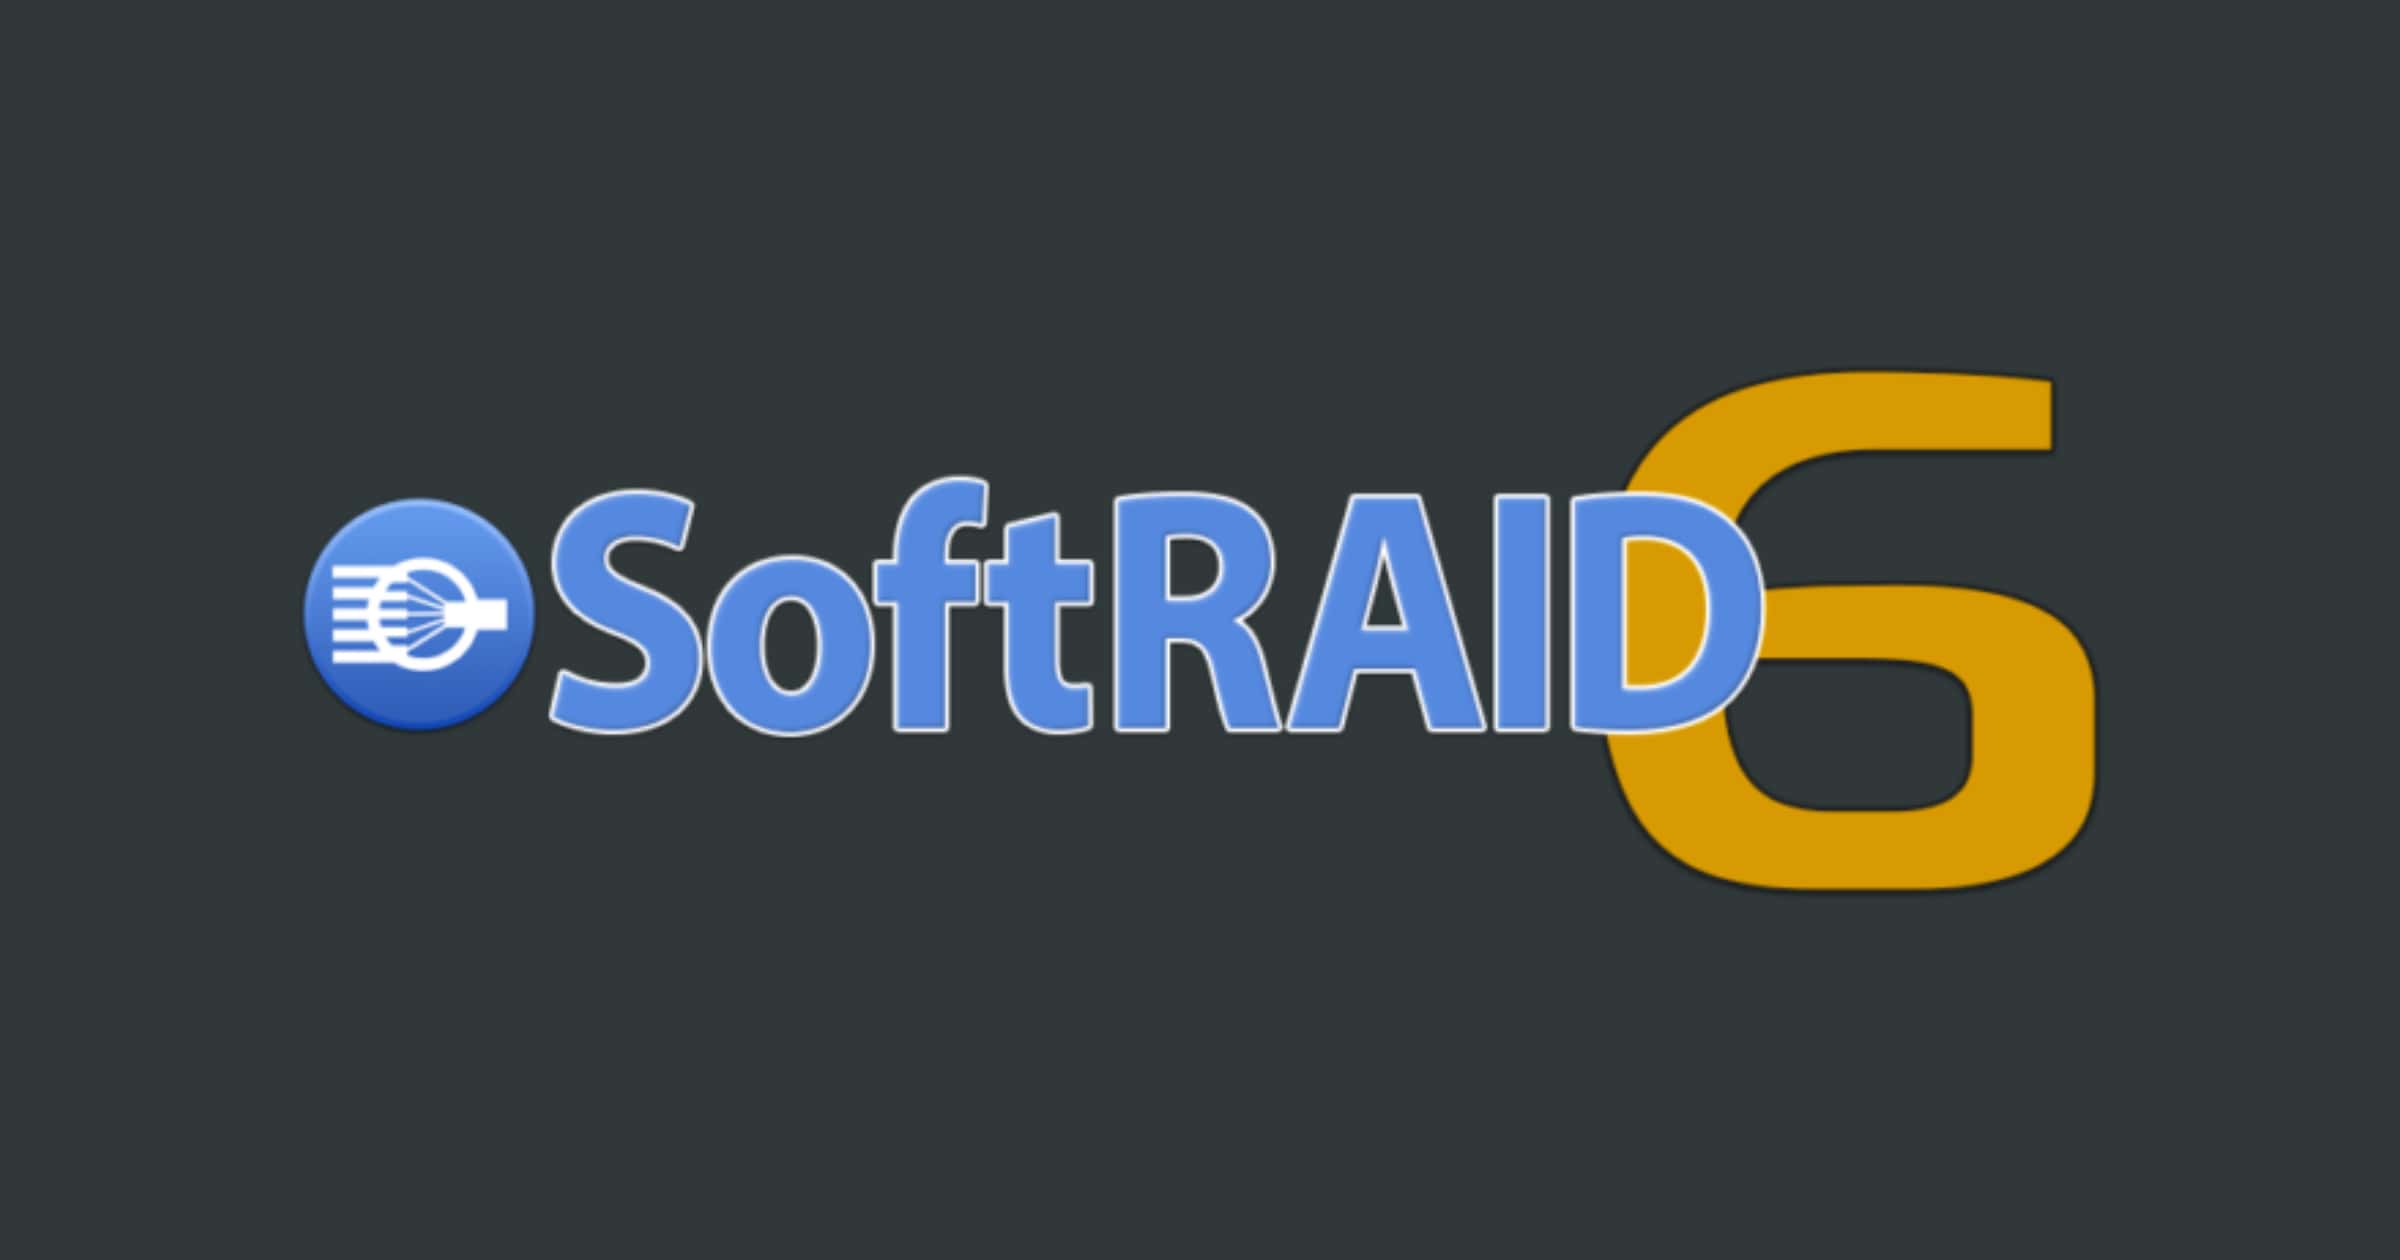 softraid 6 beta